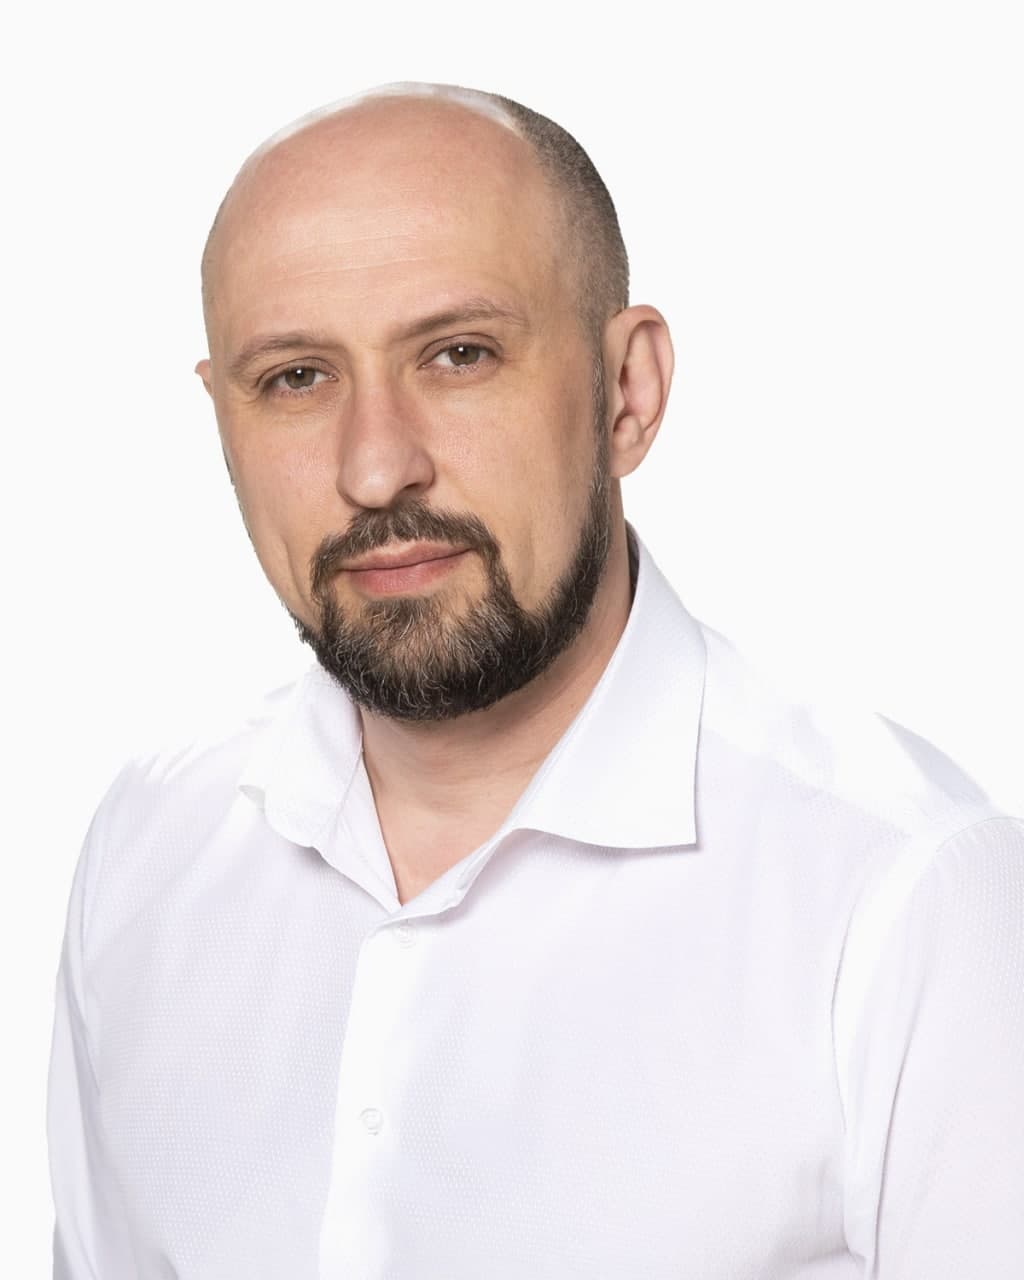 Щенников Алексей Николаевич